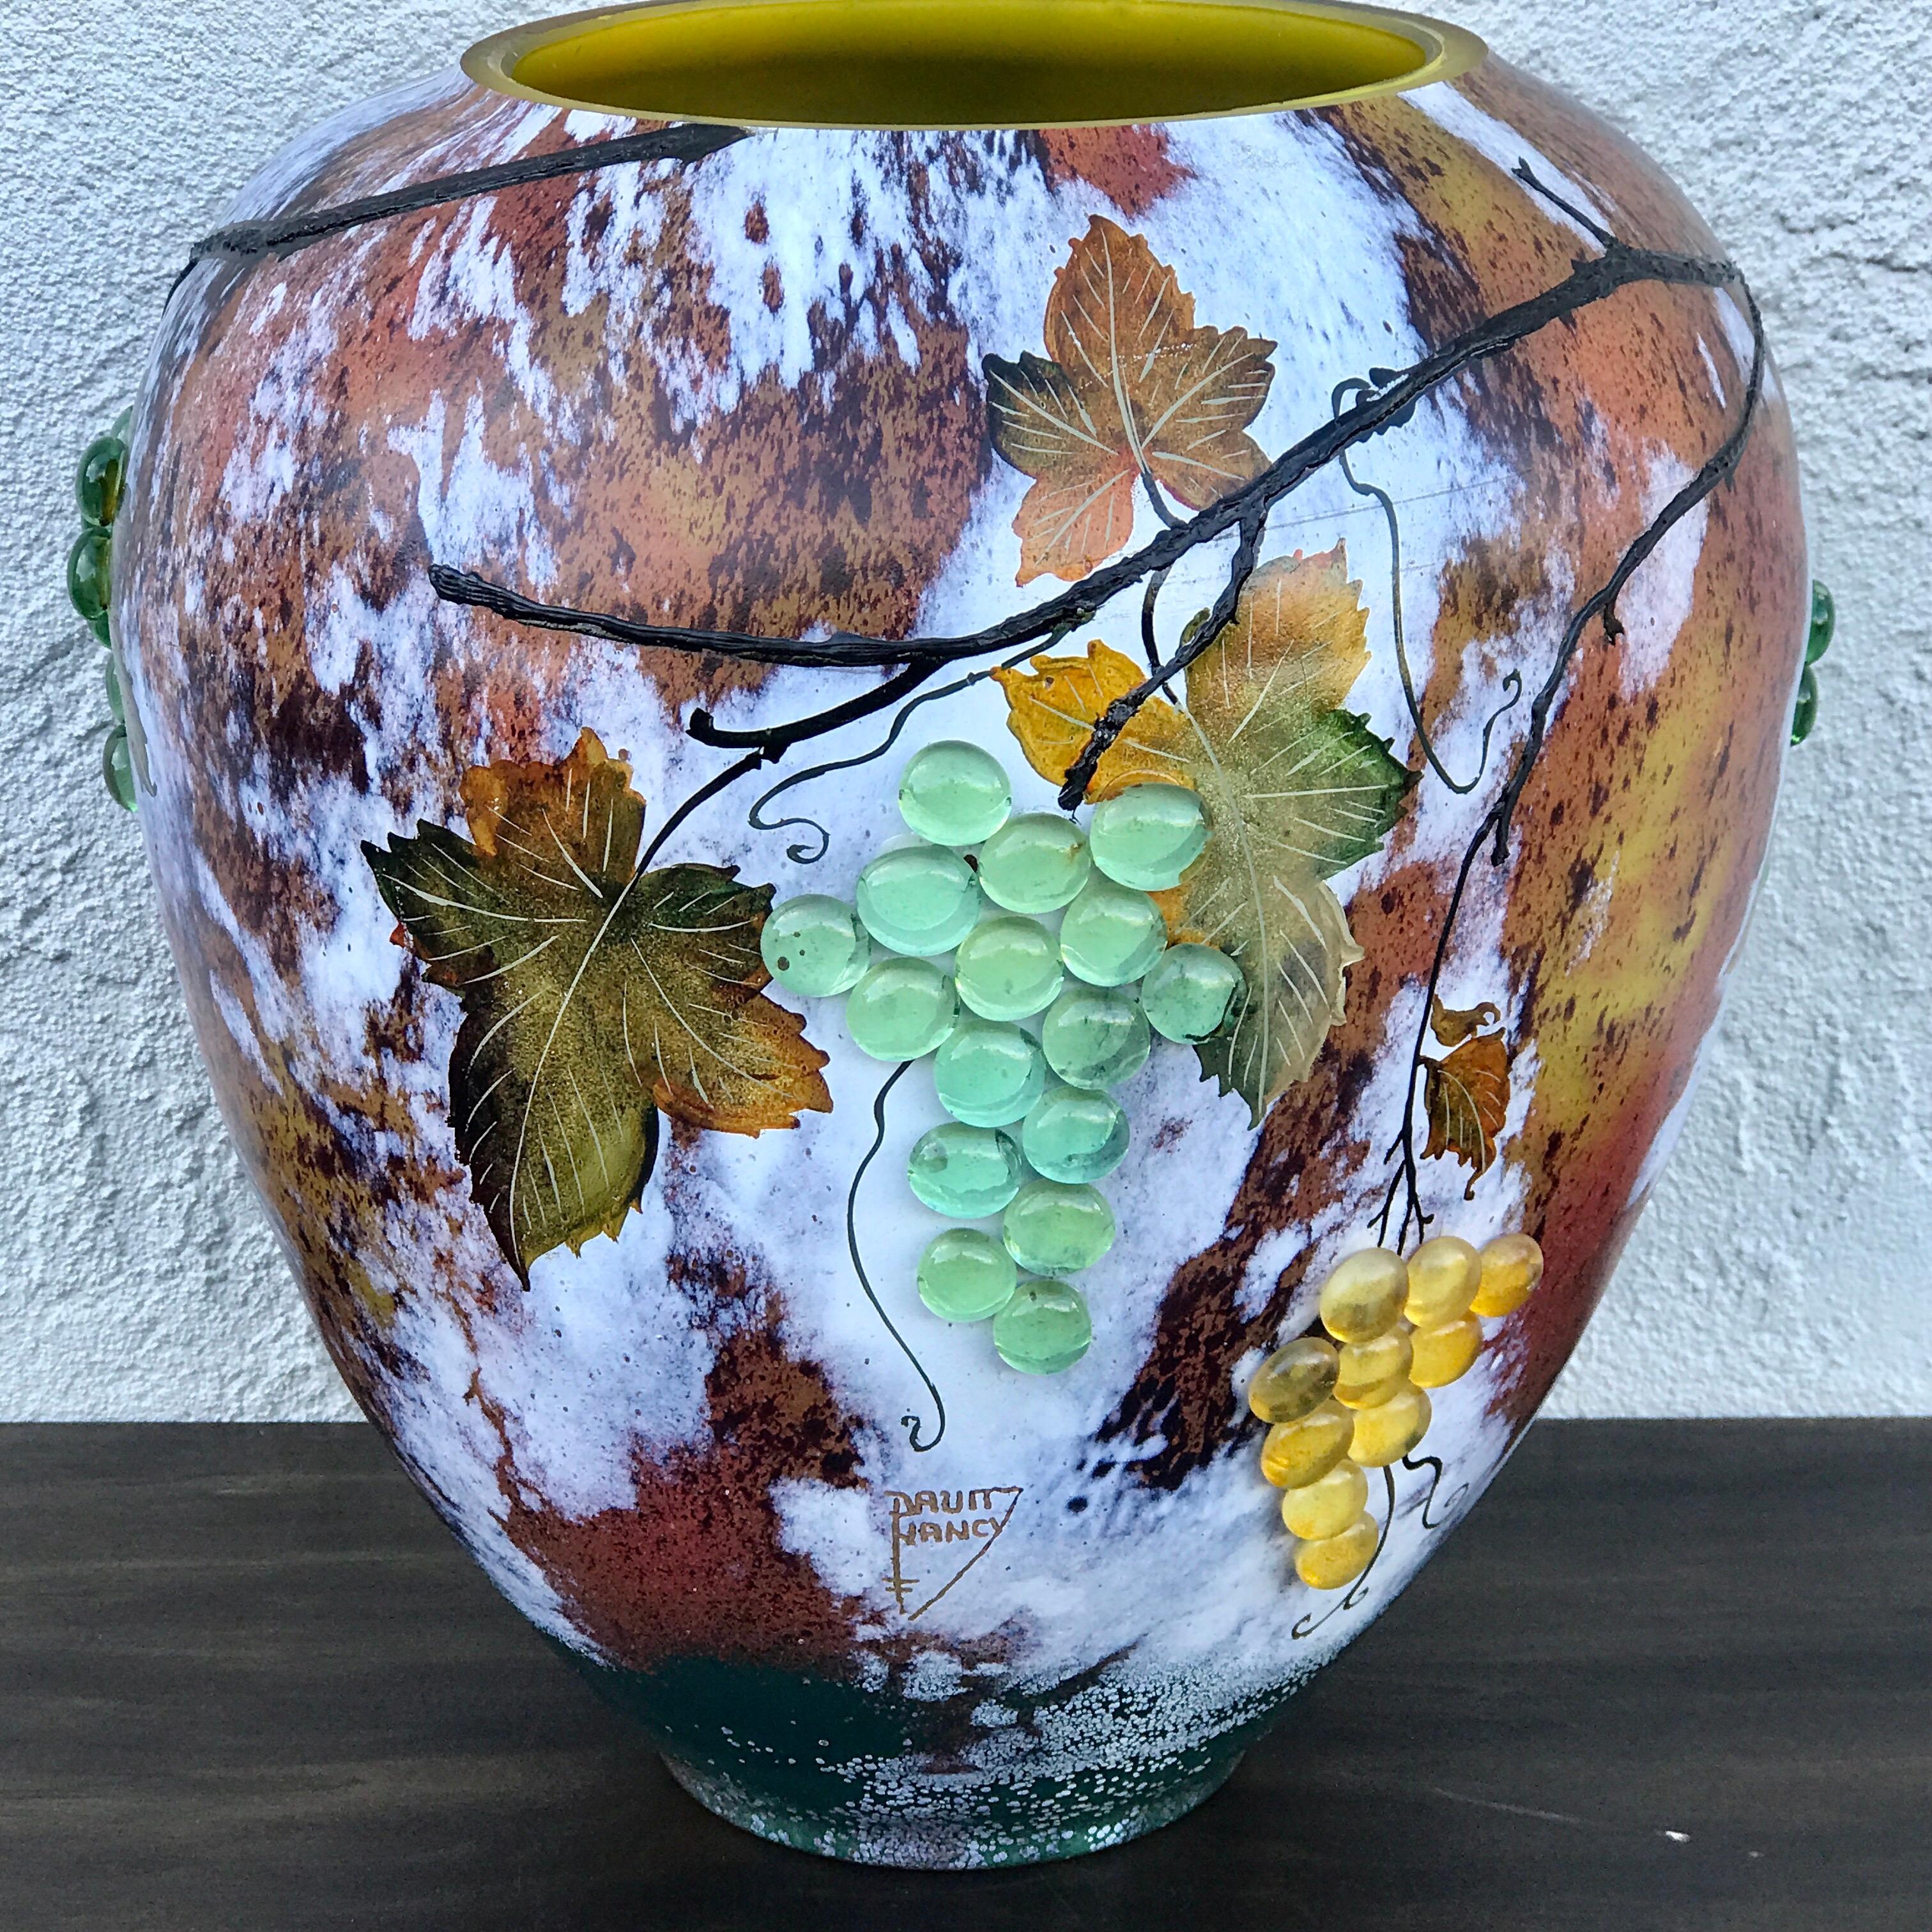 Grand vase en verre d'art avec raisins appliqués, d'après Daum Nancy

Admirez notre grand vase en verre d'art avec des raisins appliqués, un exemple étonnant de la fin du 20e siècle de la finesse d'exécution rappelant Daum Nancy. Orné de camées,